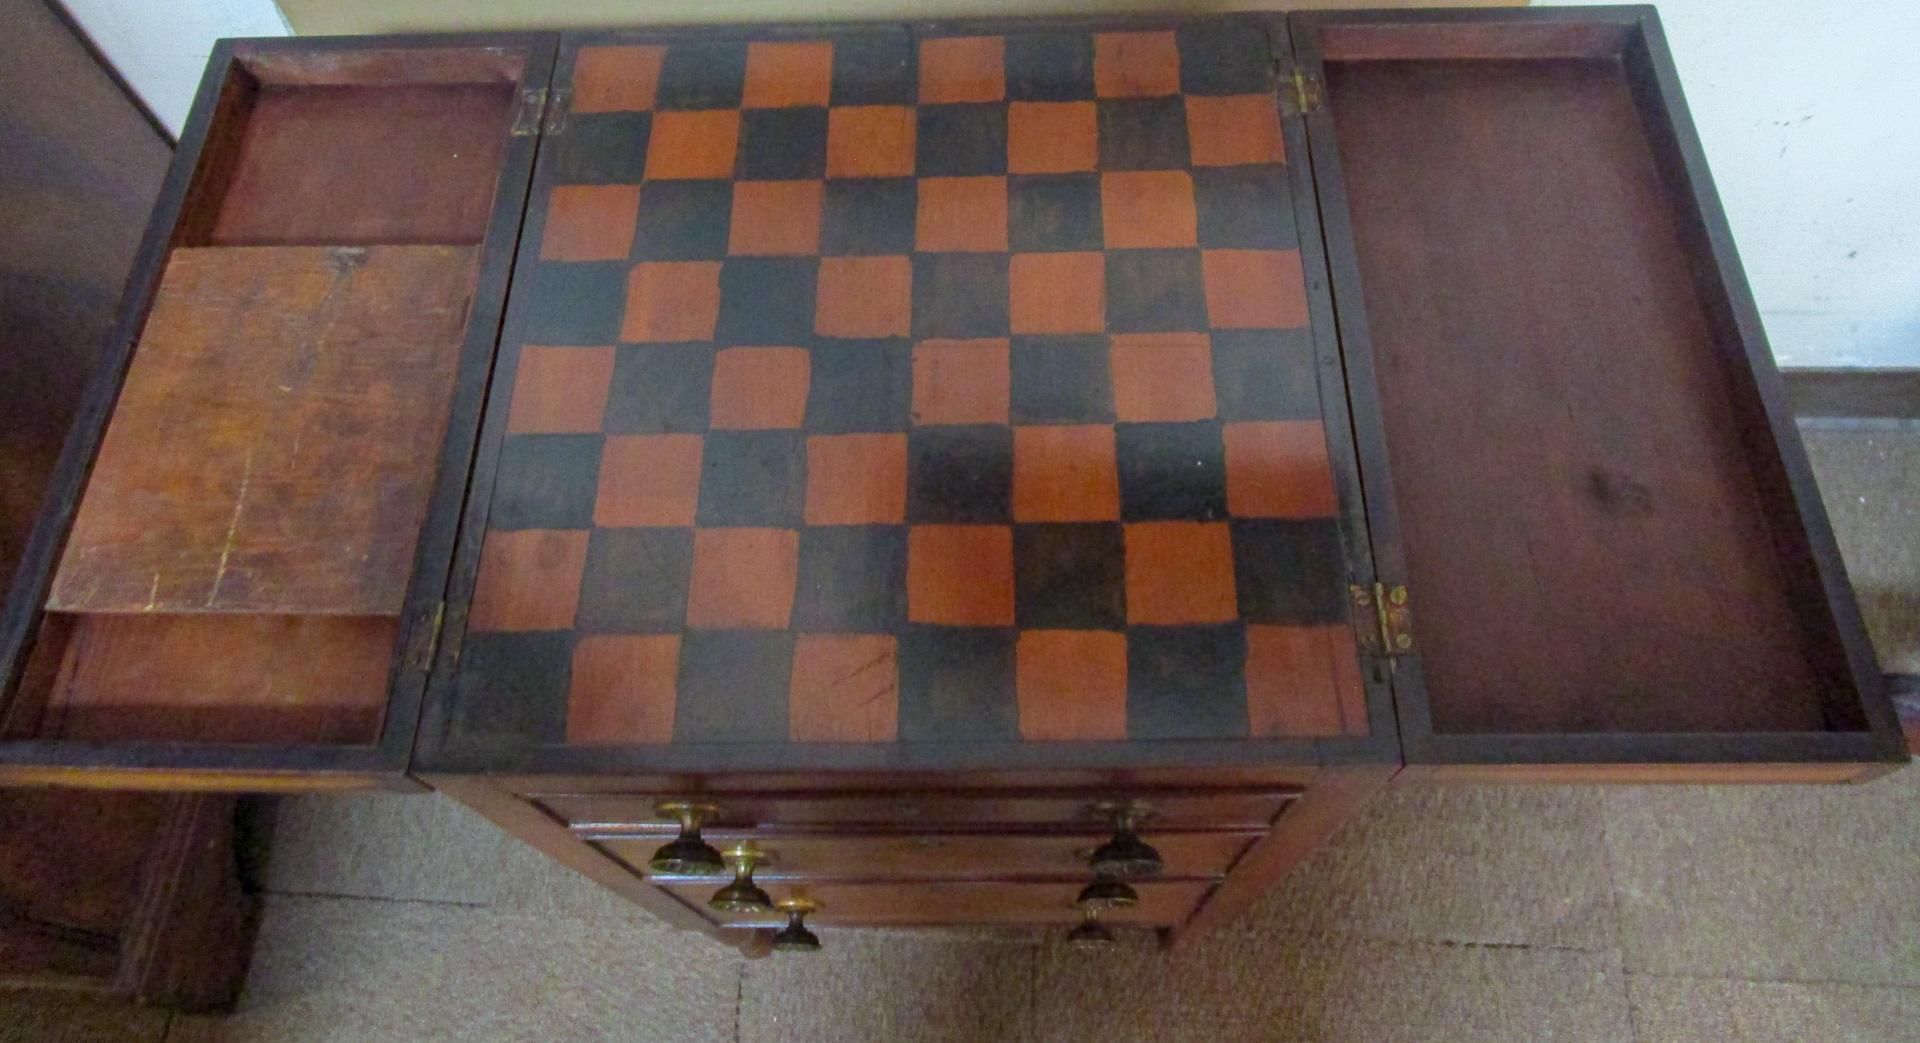 Dieser einzigartige Spieltisch in Petite-Größe verfügt über drei abgestufte Schubladen, die die originalen Messinggriffe mit Fleurette-Motiv beibehalten, und eine doppelt aufklappbare Platte, die sich zu einem Schachbrettmuster öffnet. Eine der